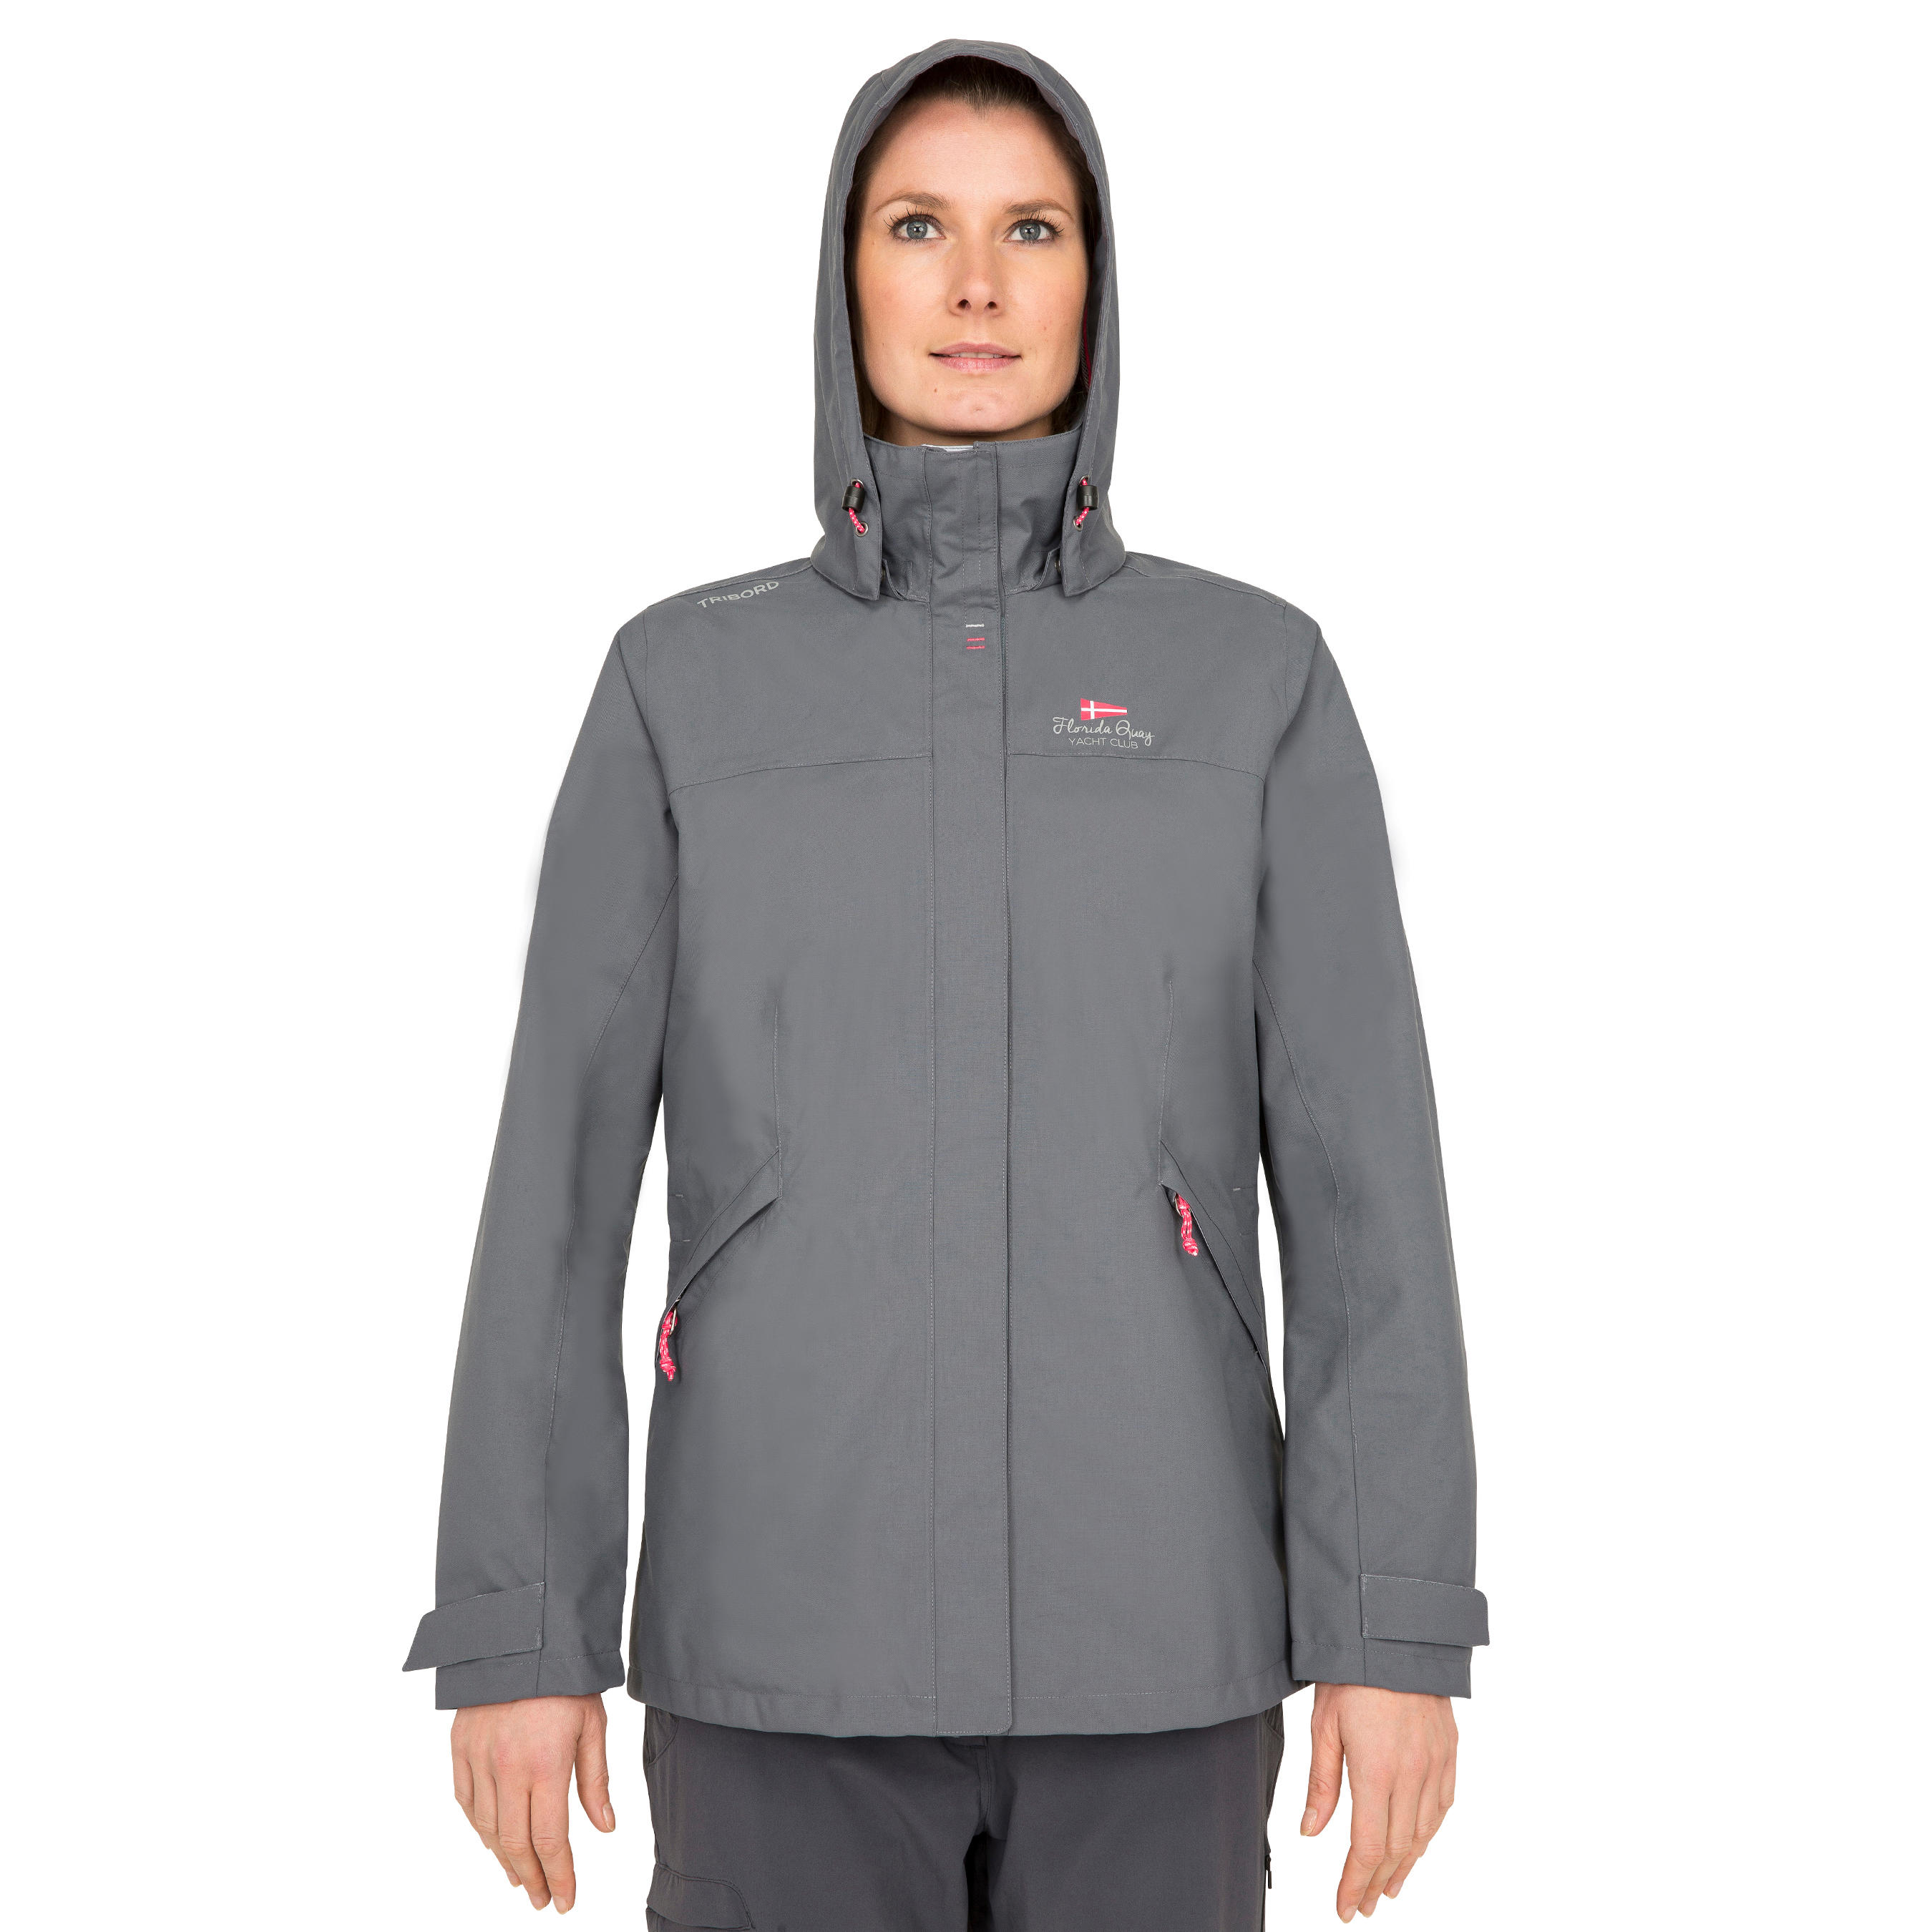 Coastal 100 women's waterproof, windproof, breathable jacket - grey 5/22